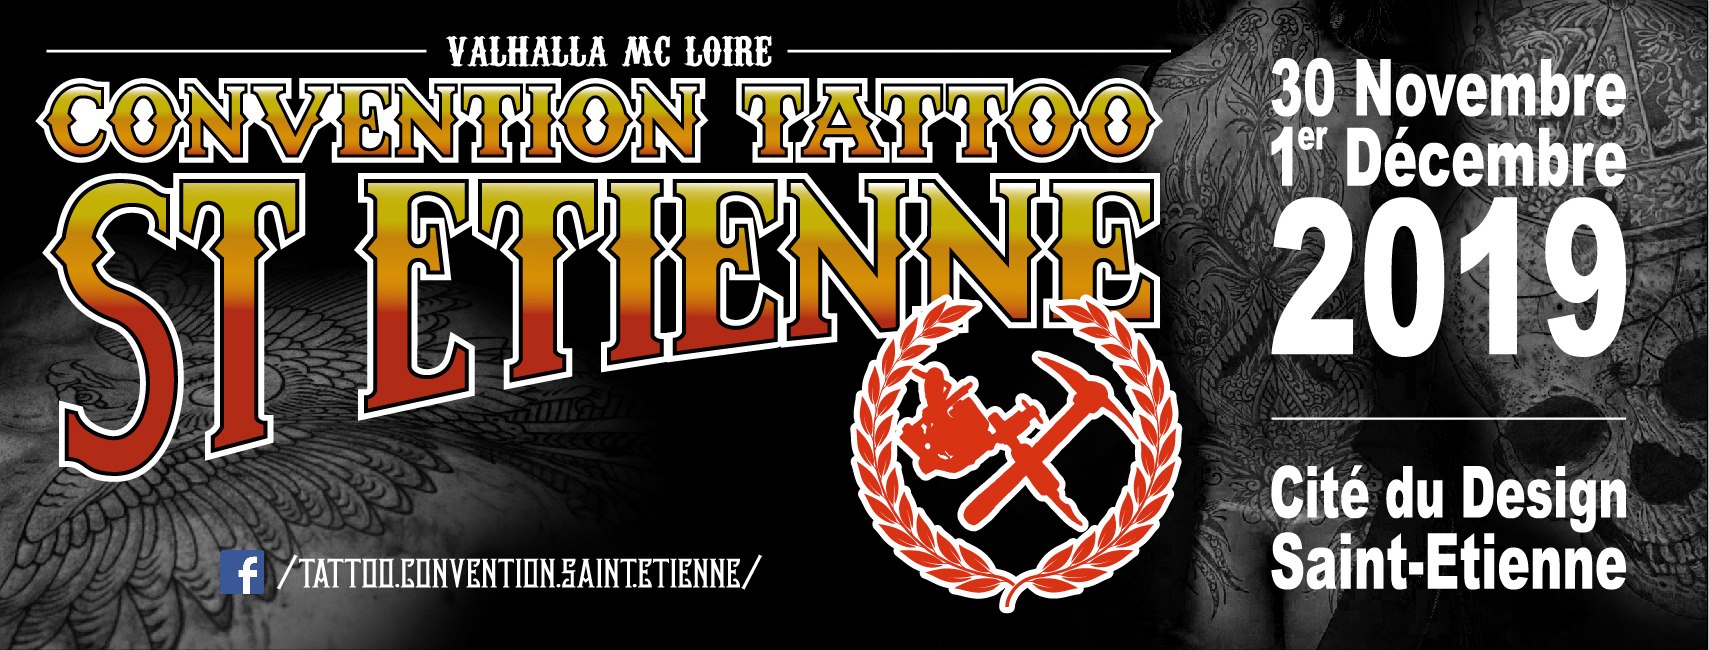 Convention tatouage